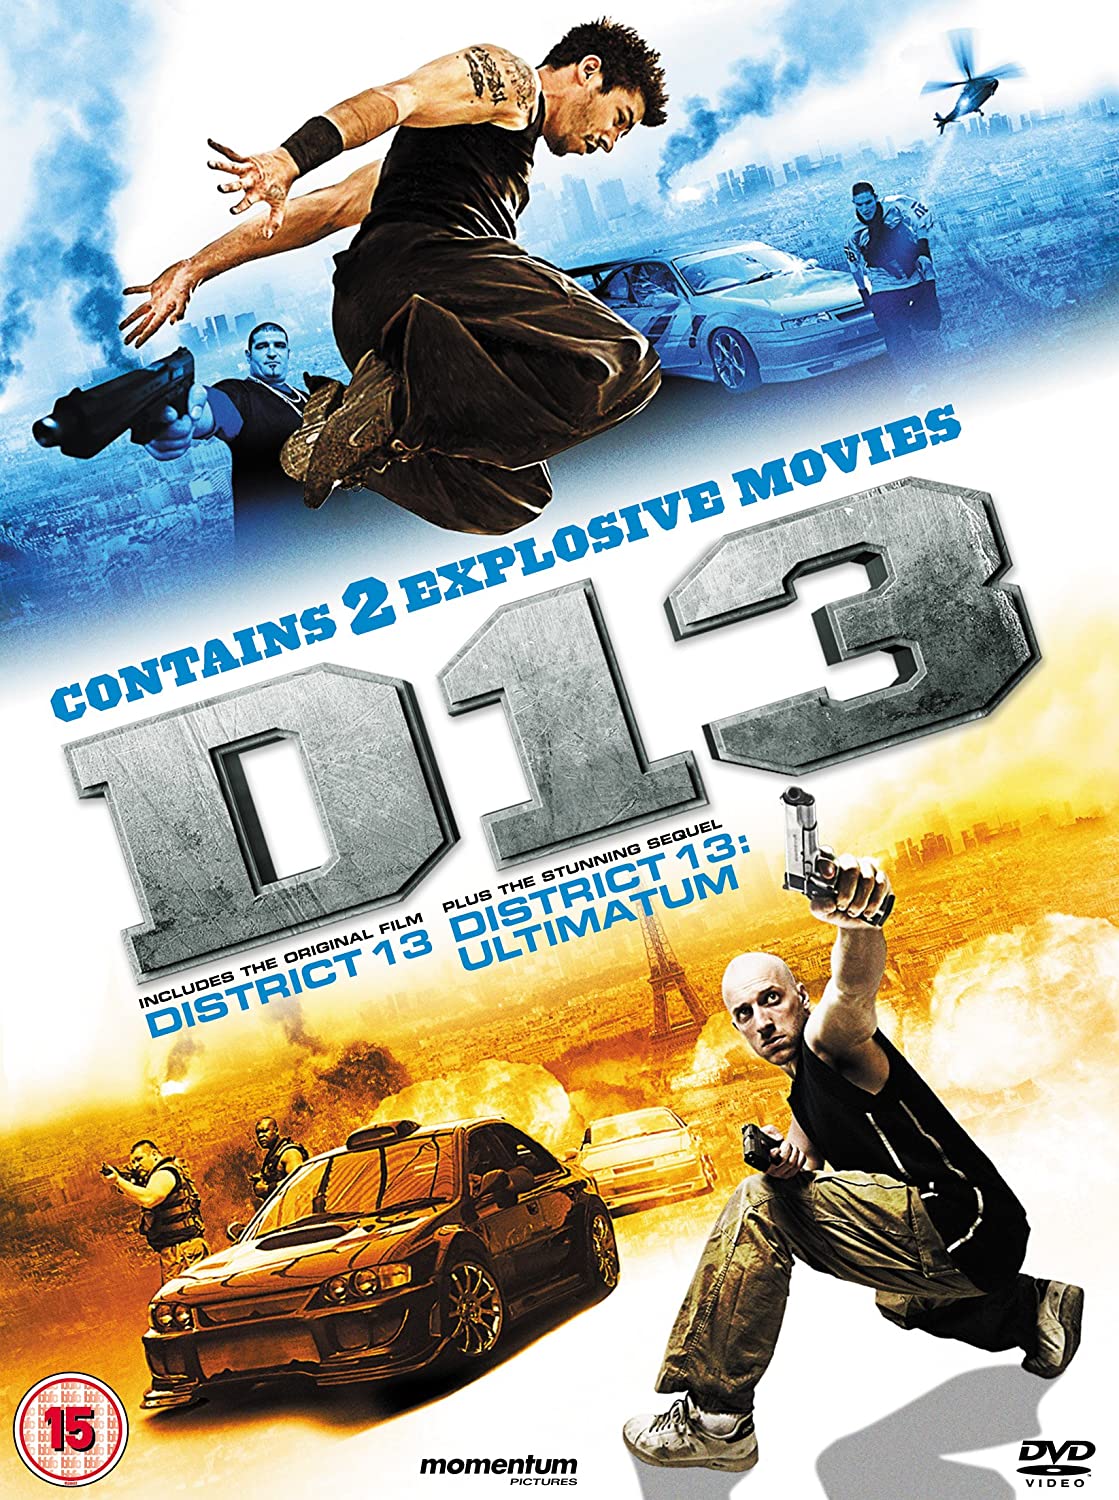 District 13 (2004) District B13/Banlieue 13